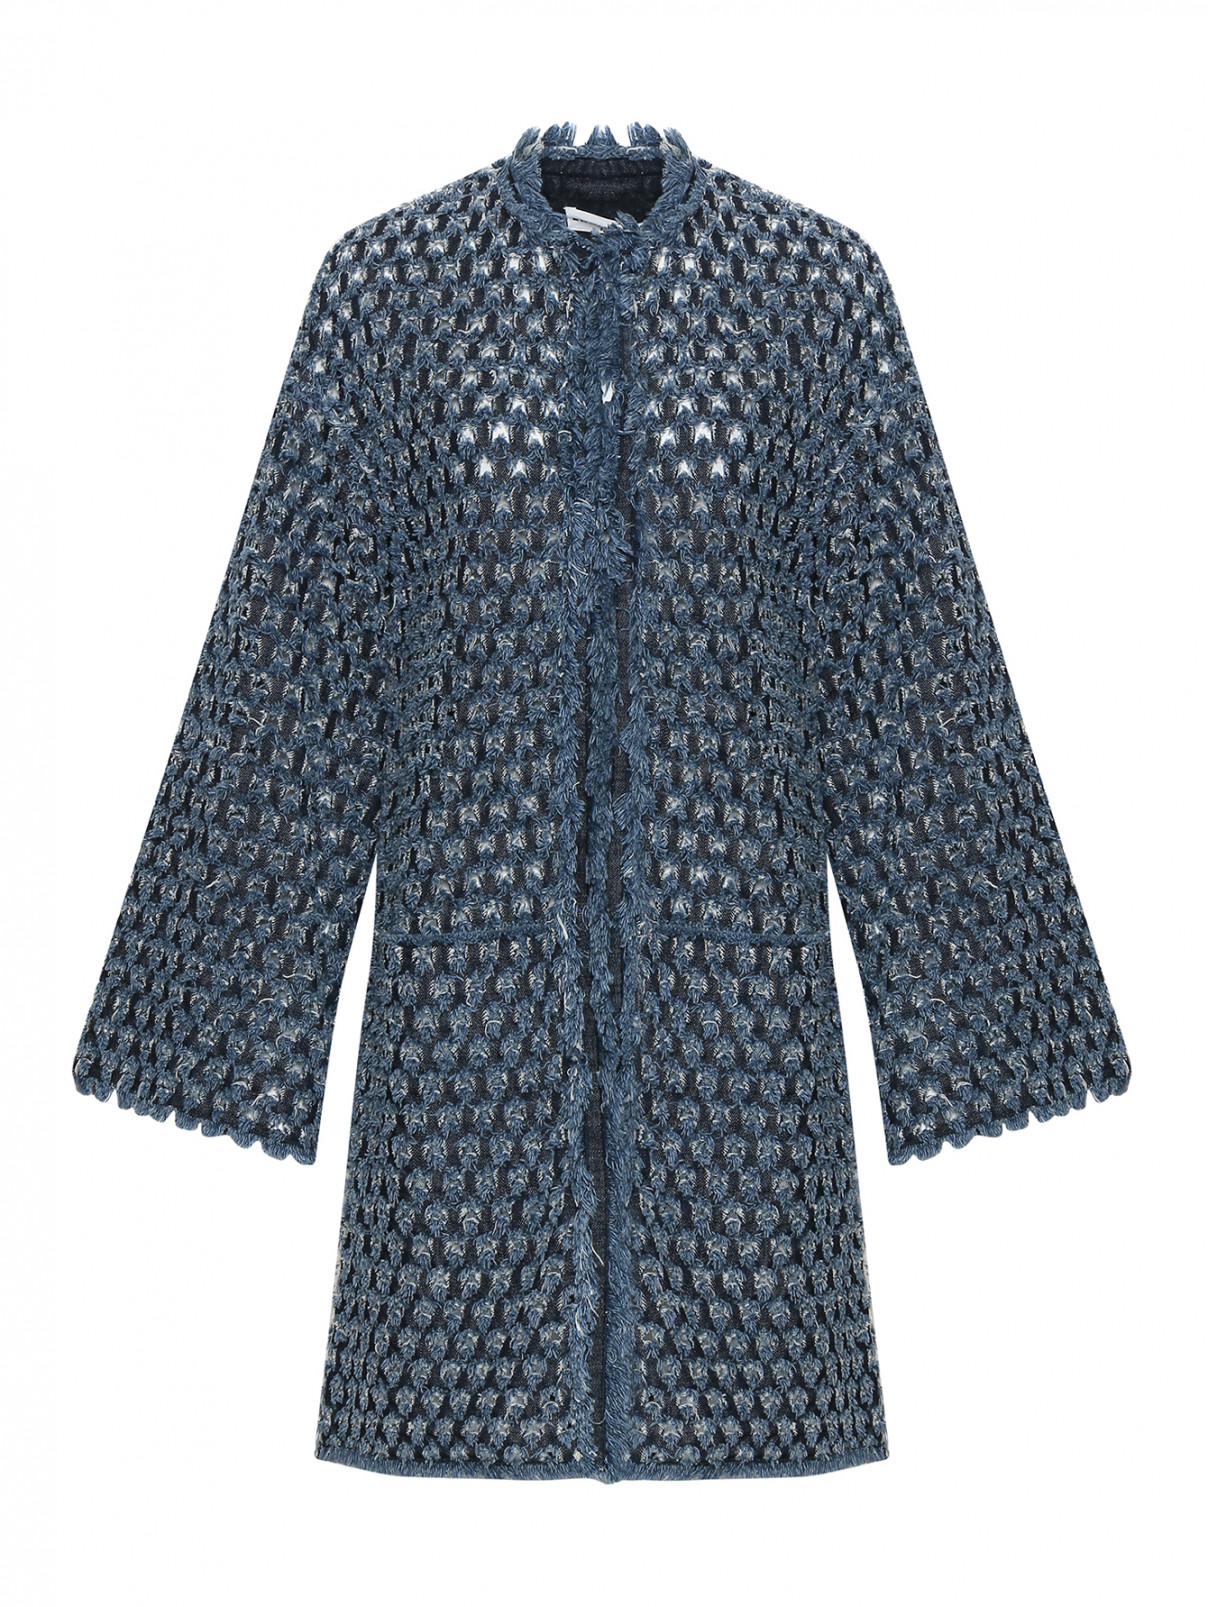 Пальто из денима с узором Sonia Rykiel  –  Общий вид  – Цвет:  Синий